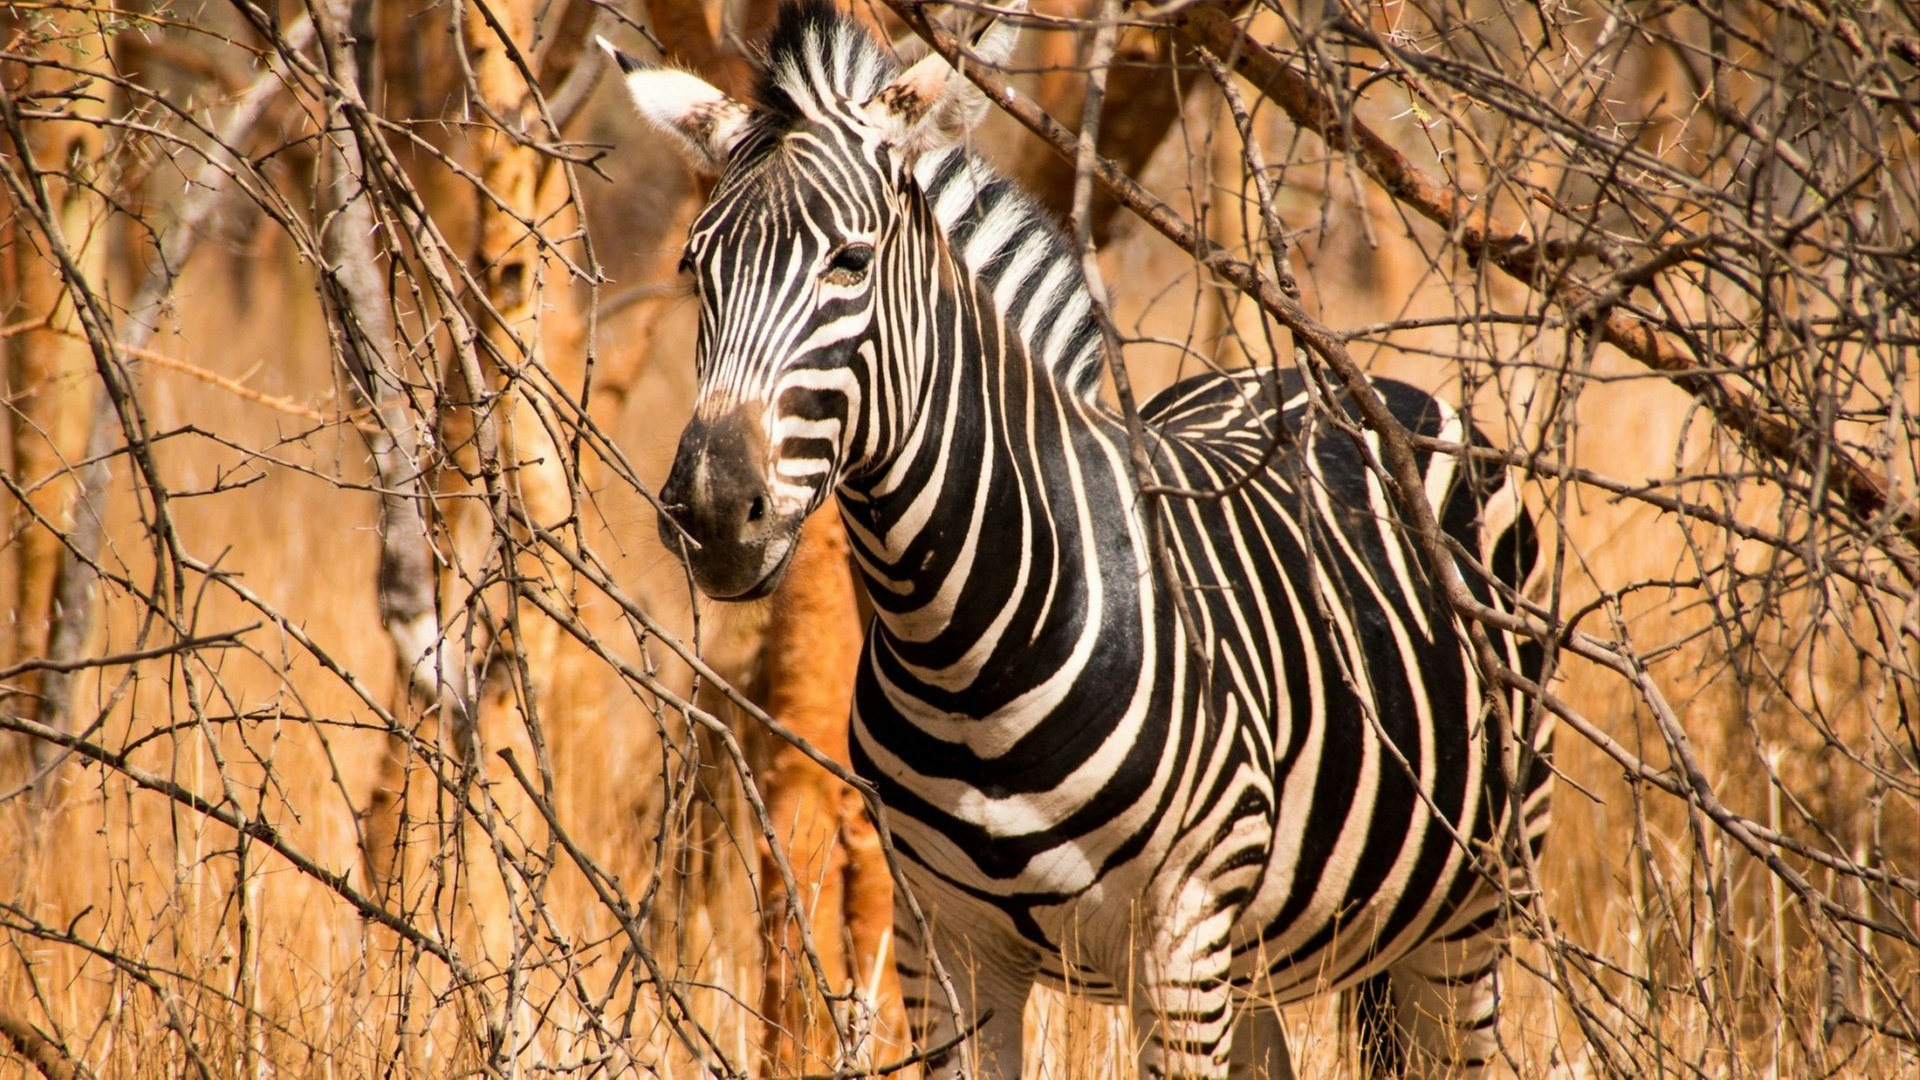 Zebra in the Bandia Reserve in Senegal, West Africa